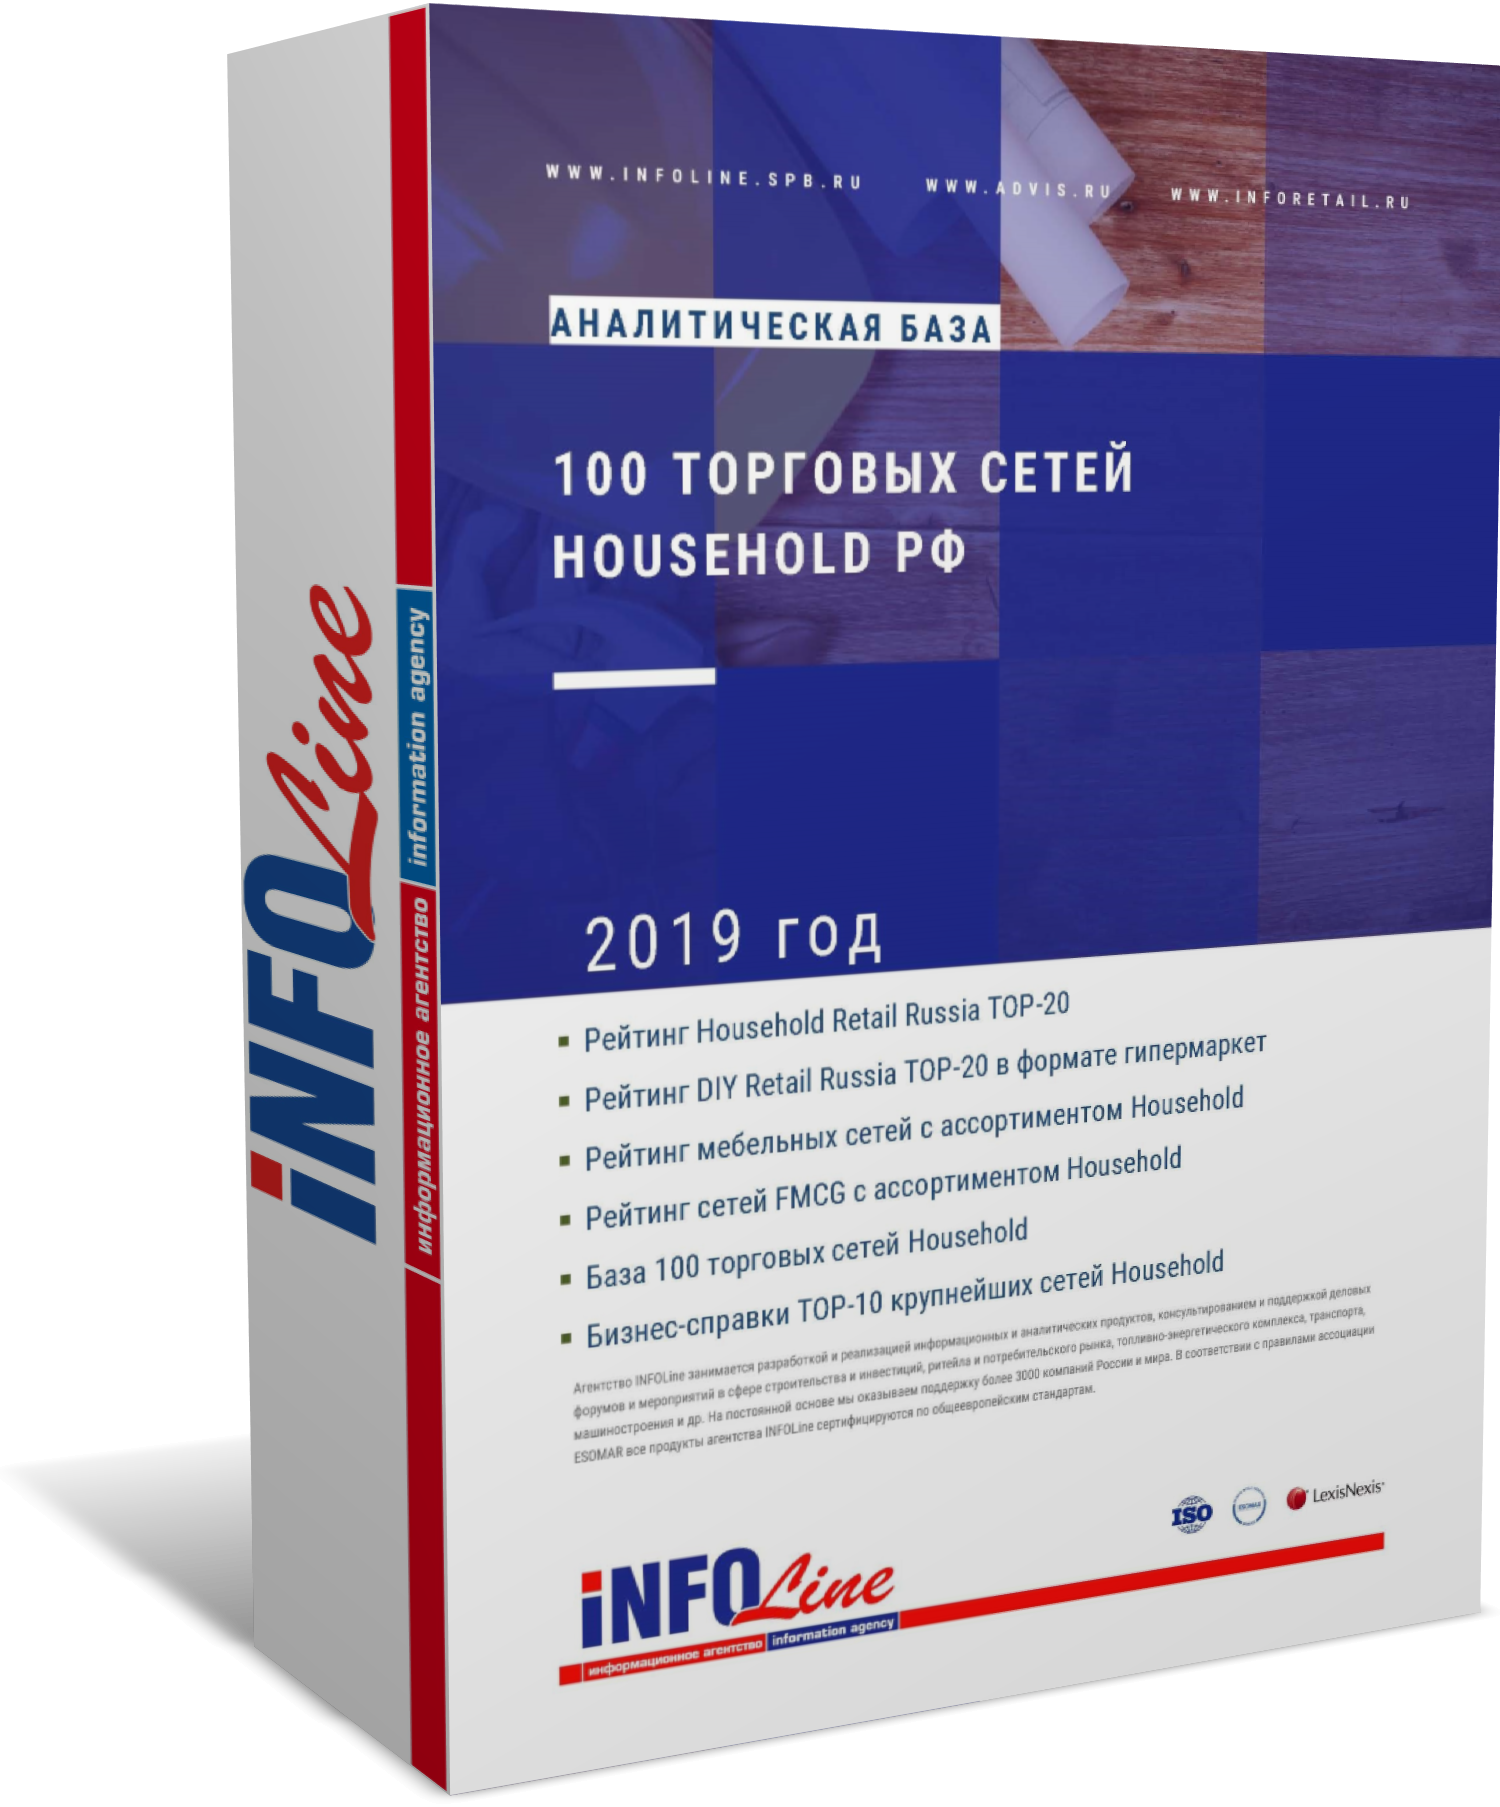 Аналитическая база "100 торговых сетей Household РФ. 2019 год"